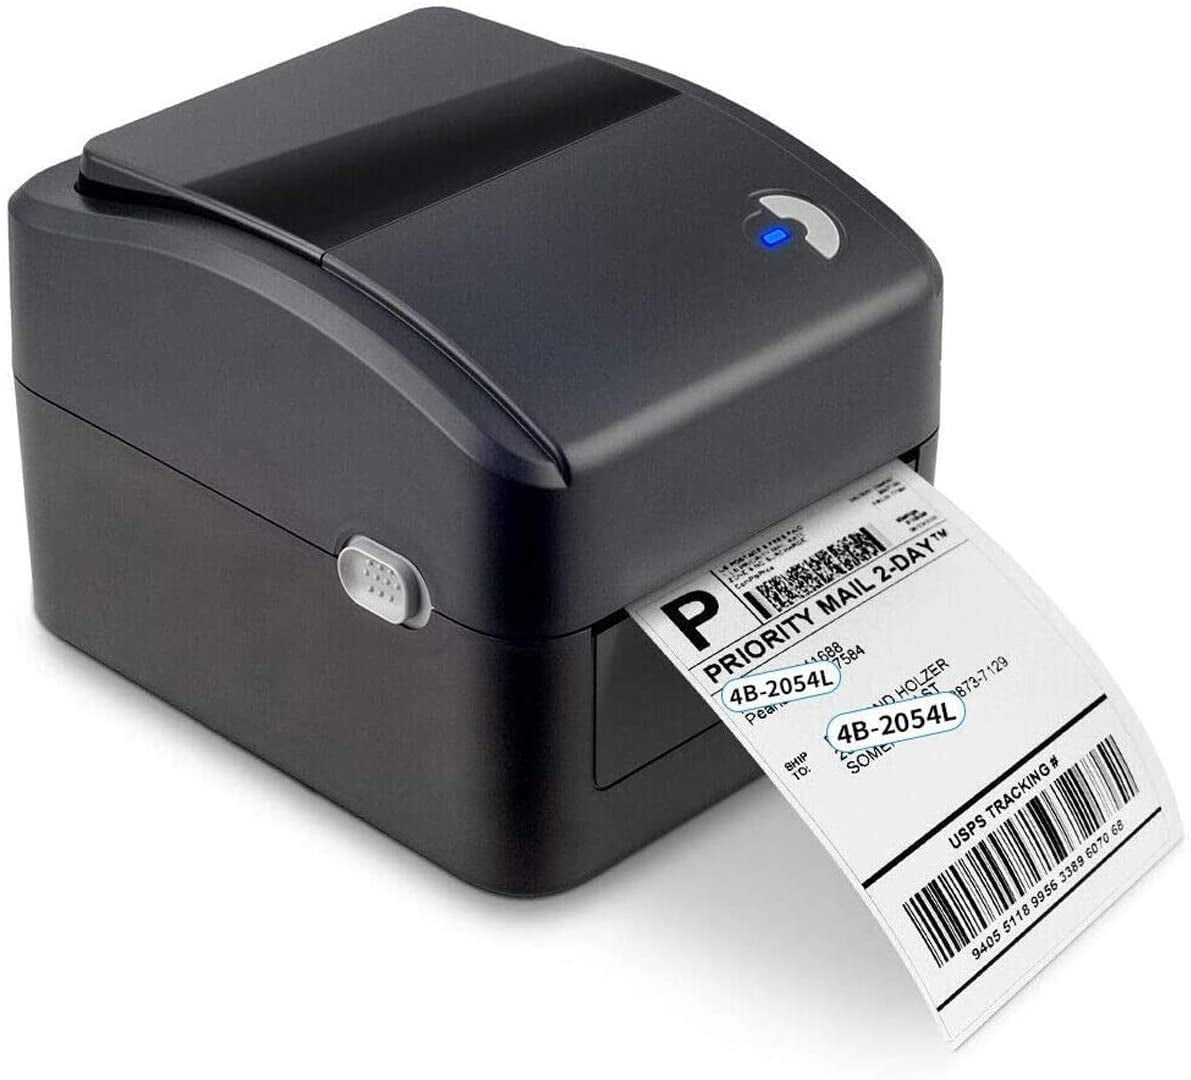 Imprimante d'étiquettes d'expédition de codes-barres thermiques compatibles    PayPal  Shopify Shipstation Stamps.com Ups USPS FedEx DHL